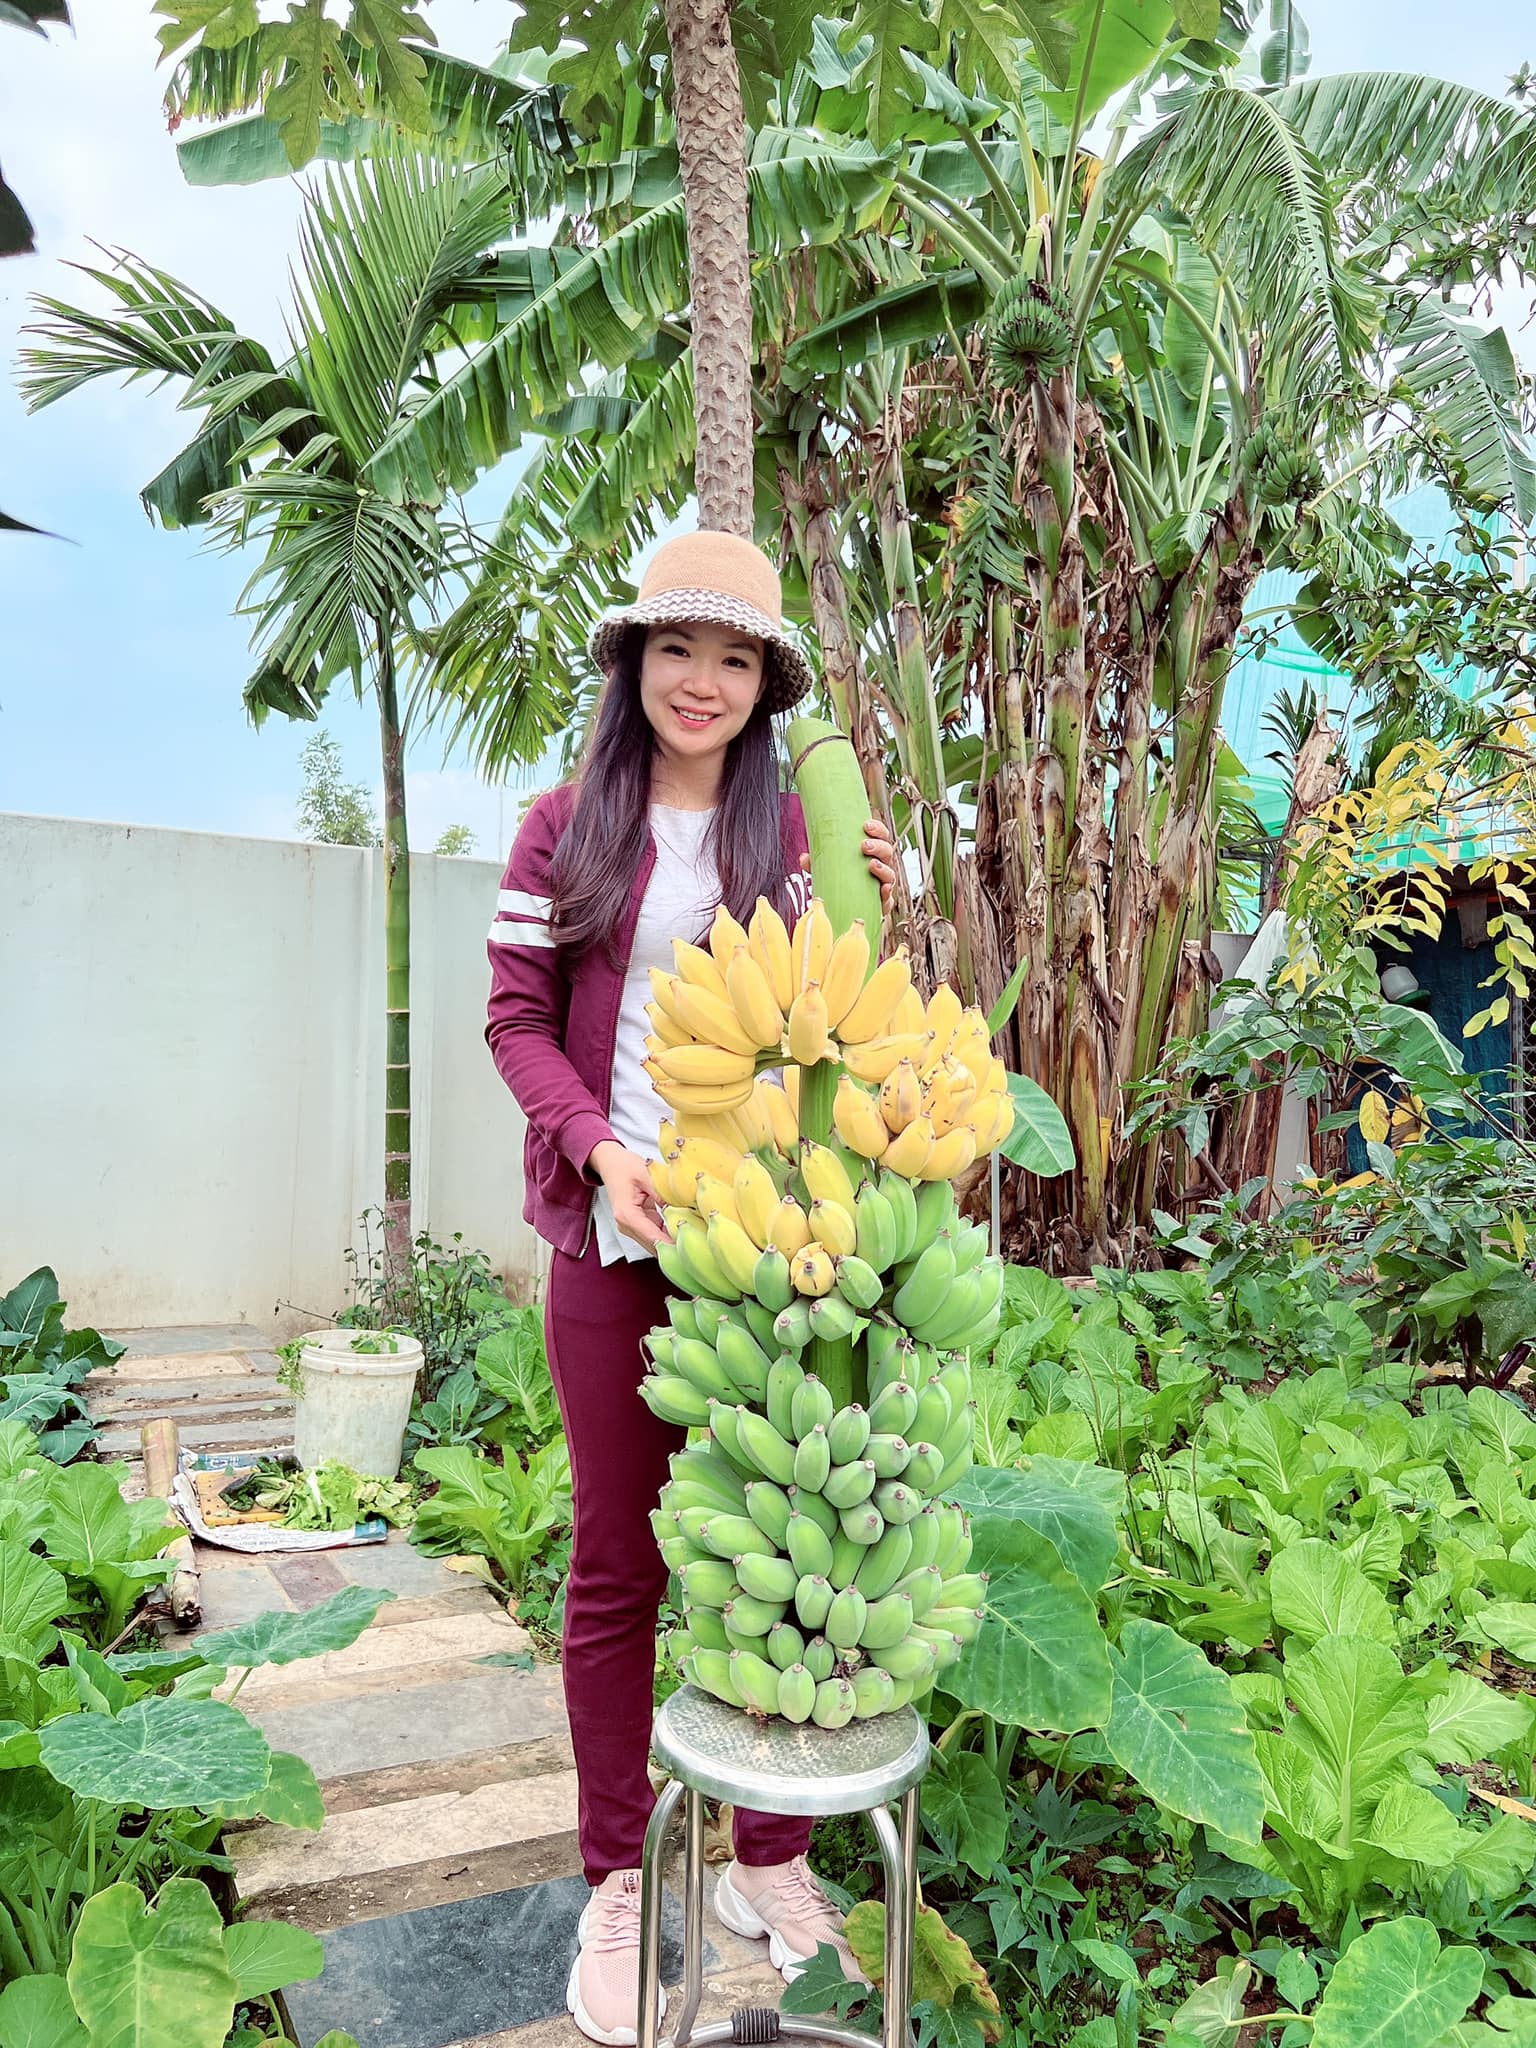 Khu vườn rộng 300m2 sum suê rau trái, mùa nào thức nấy, tươi tốt um tùm của mẹ đảm 4 con ở Quảng Ninh- Ảnh 16.